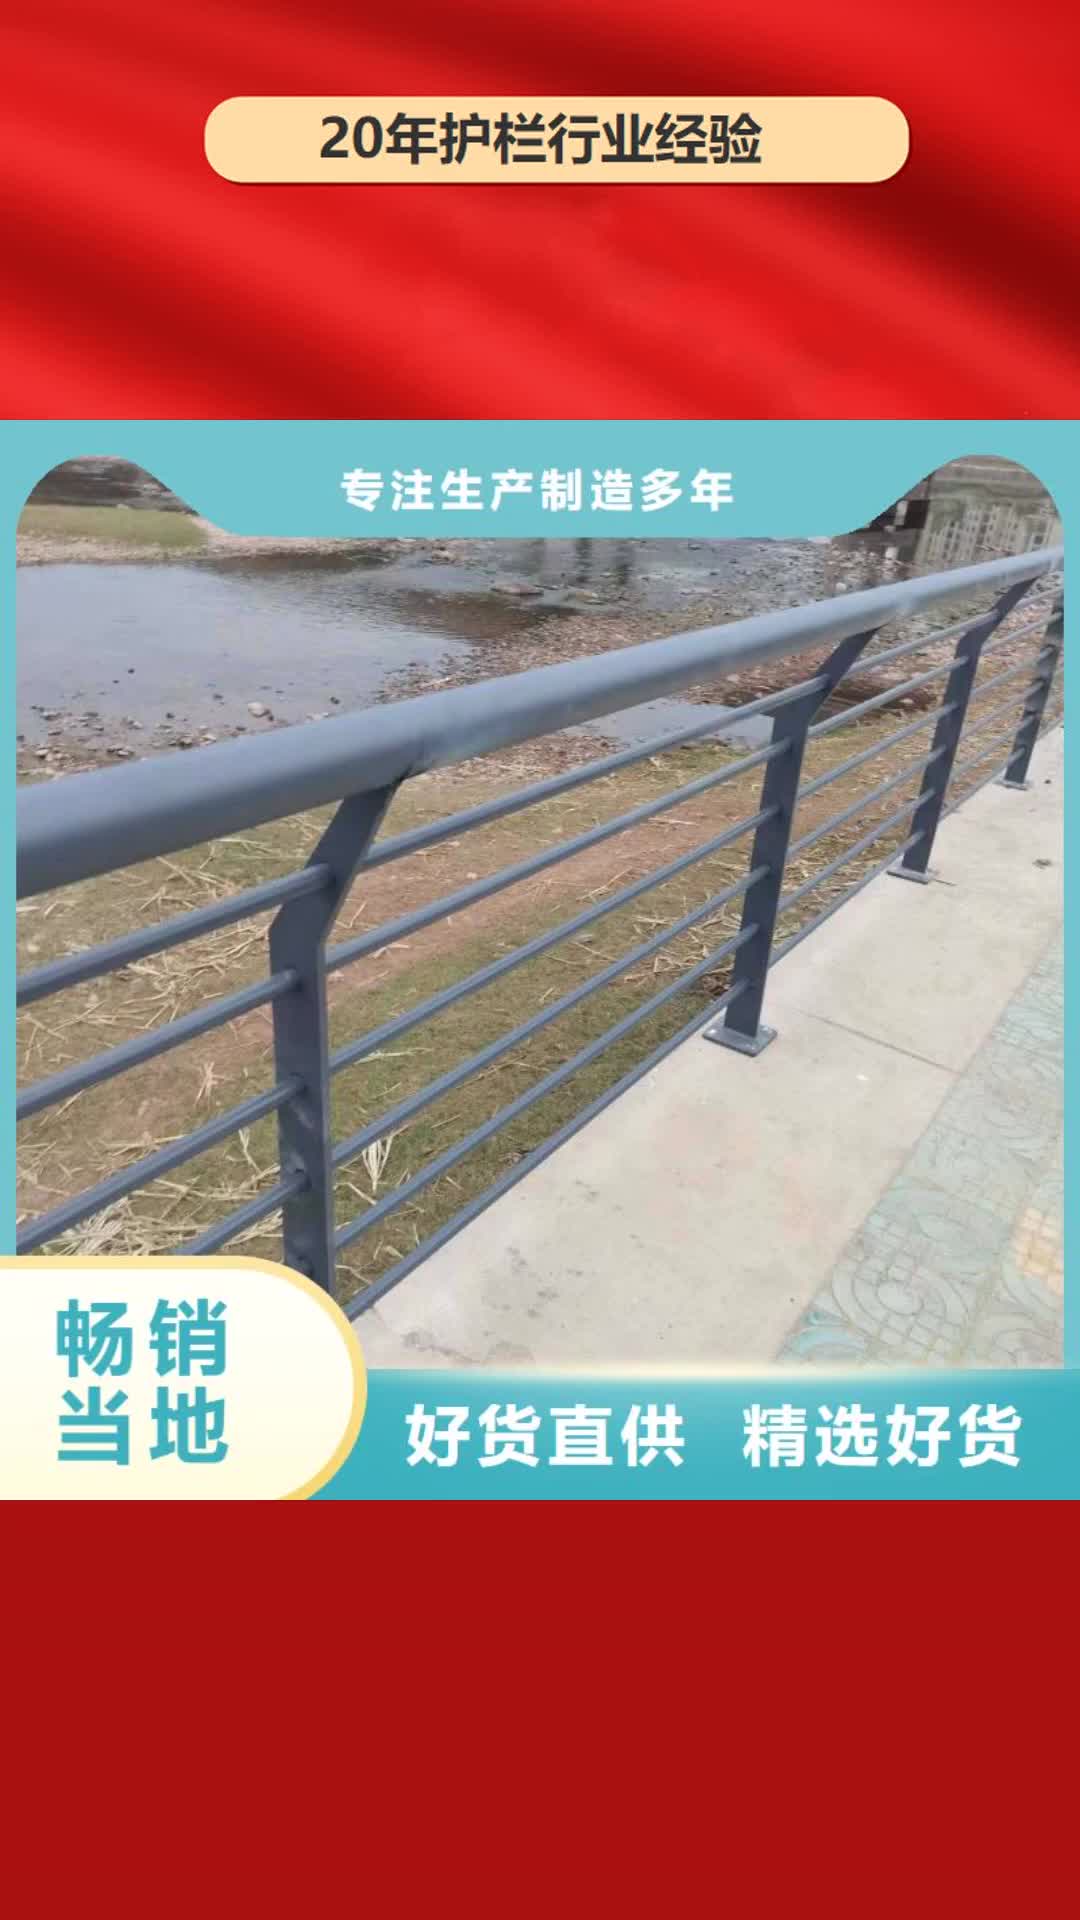 哈尔滨 护栏 【桥梁护栏 】符合行业标准